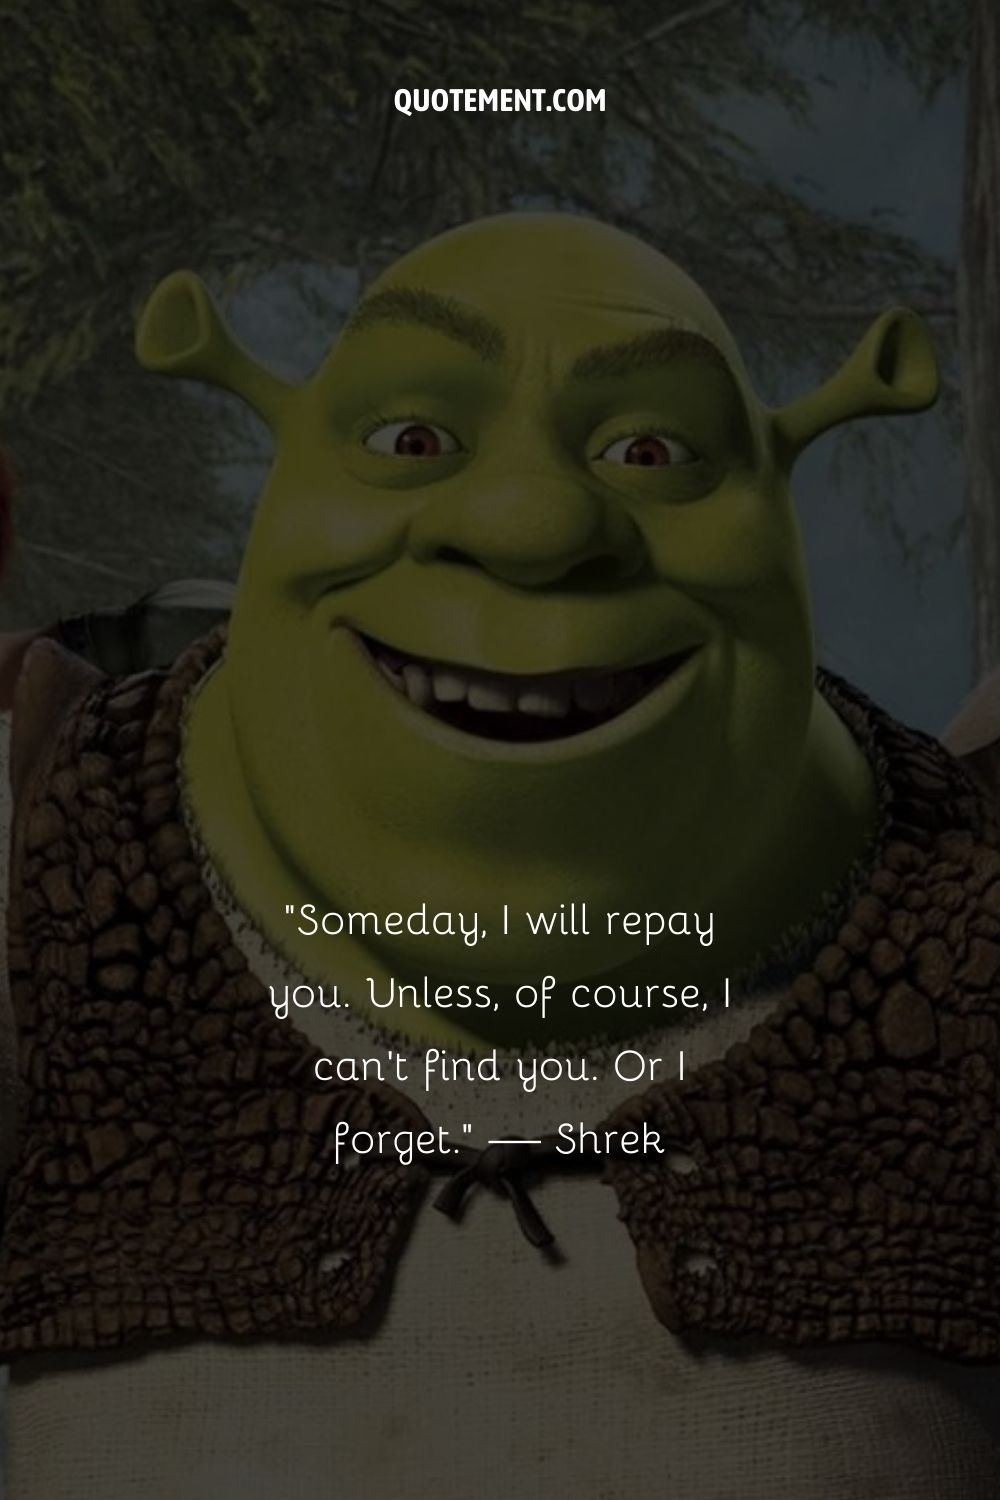 Brilliant Shrek quote.
